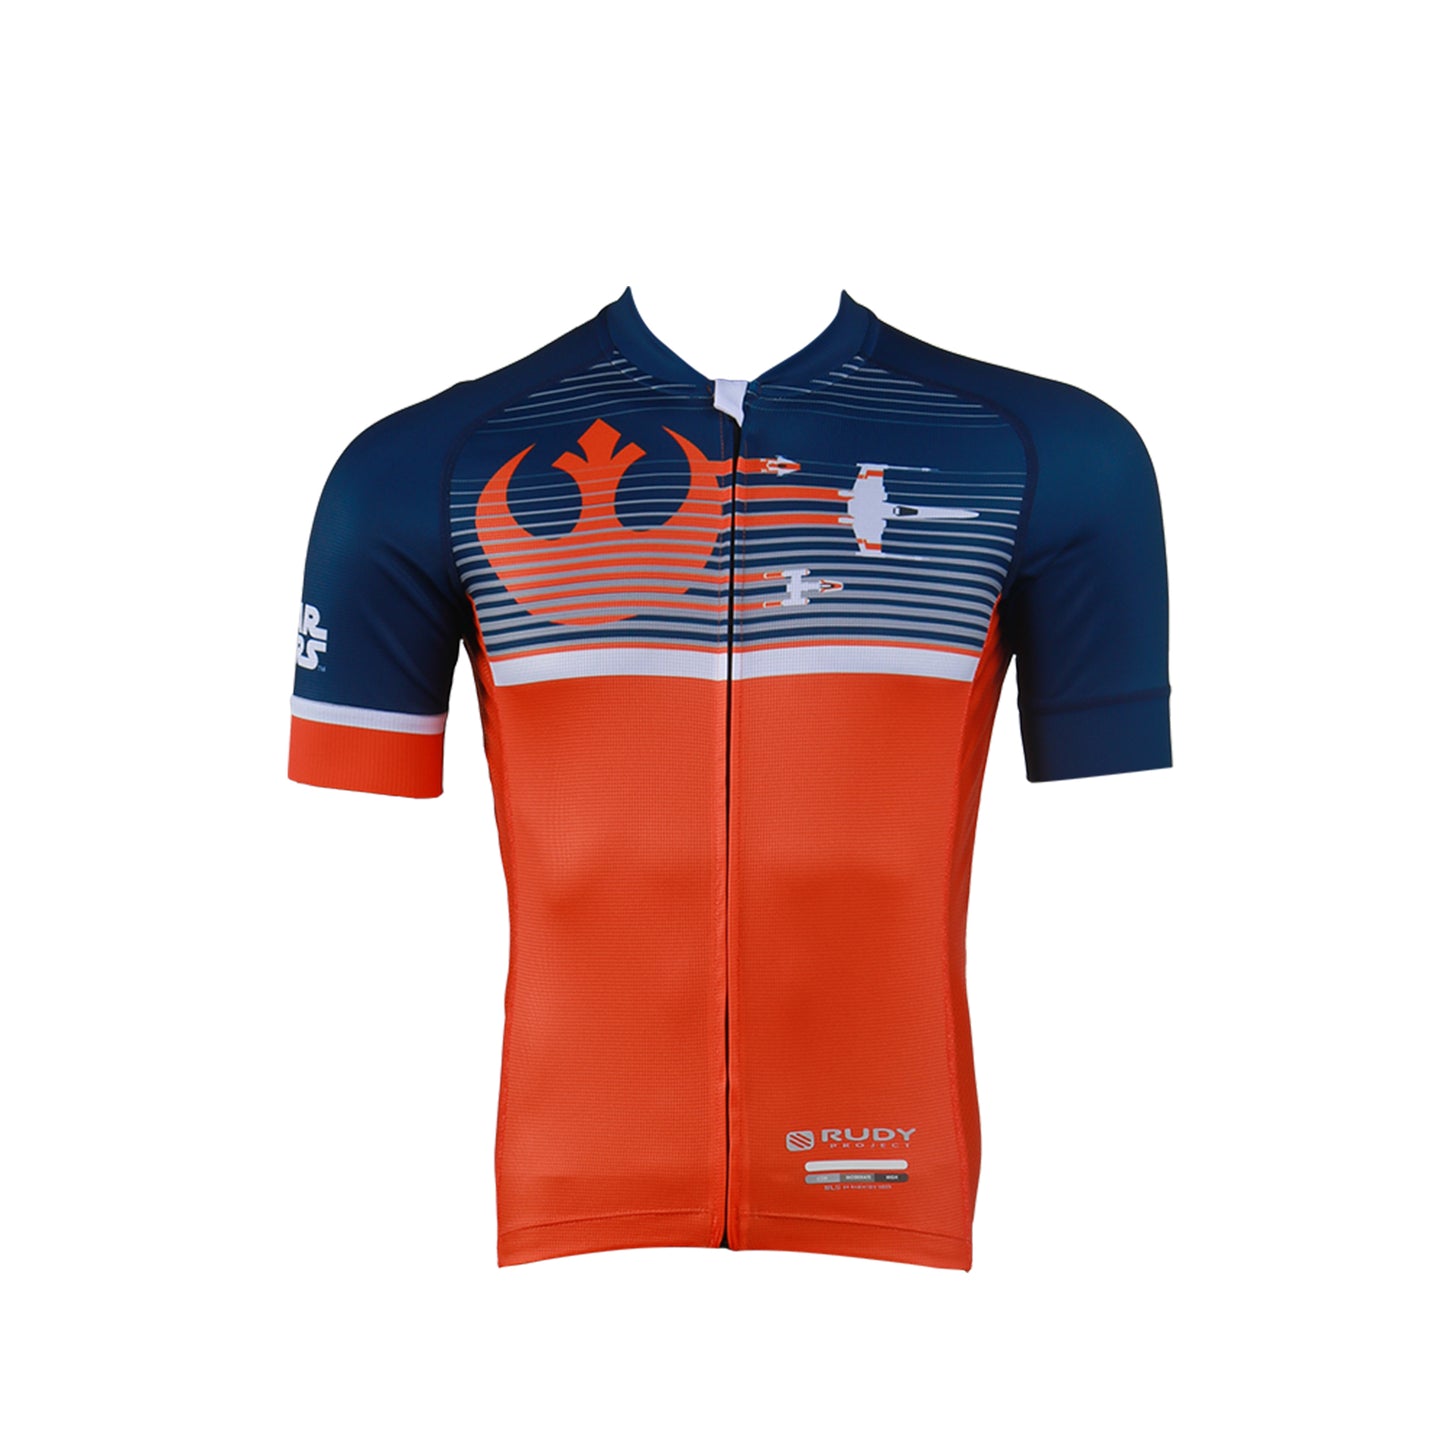 Rudy Project Star Wars Luke Skywalker Resistance Cycling Jersey - Orange/Navy